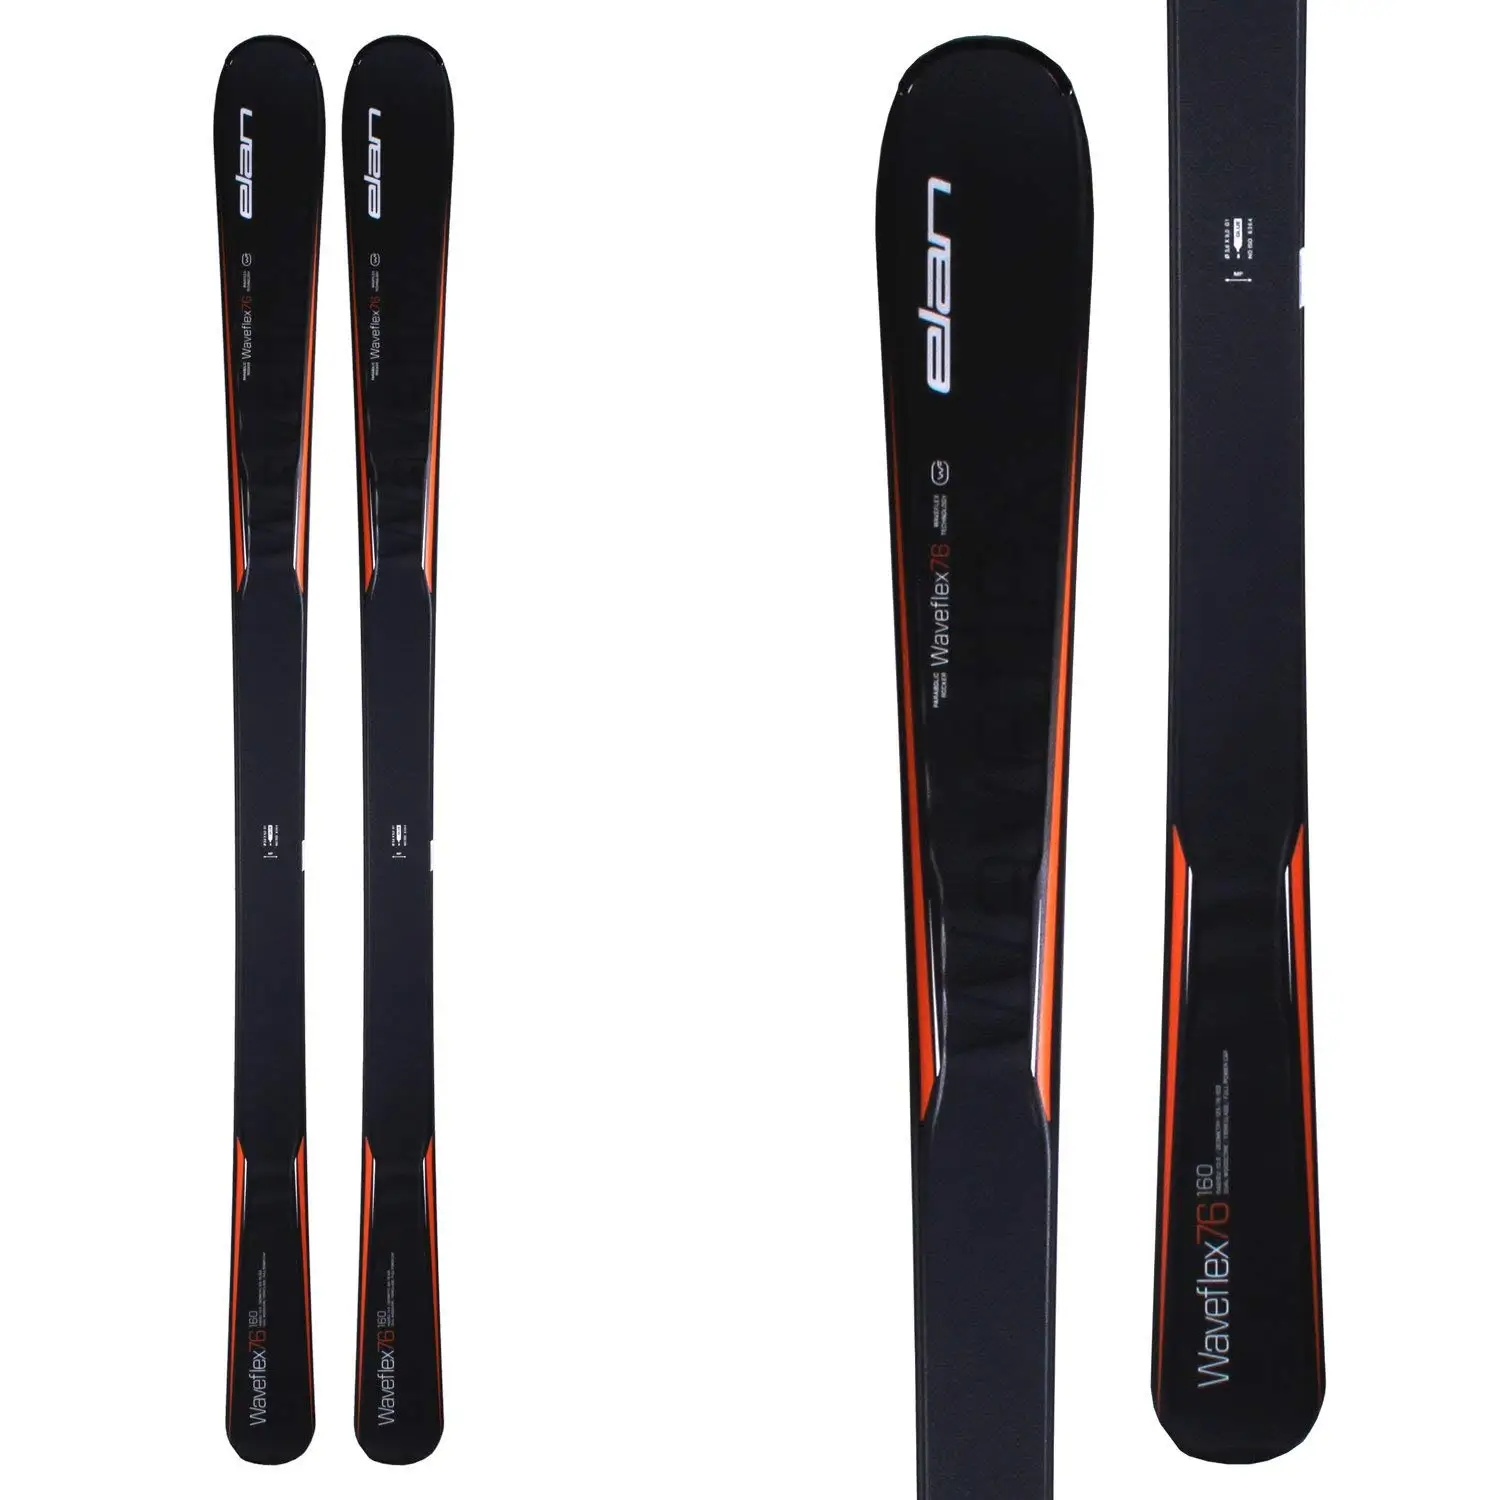 Buy Elan Waveflex 76 Skis 2016 in Cheap Price on m.alibaba.c